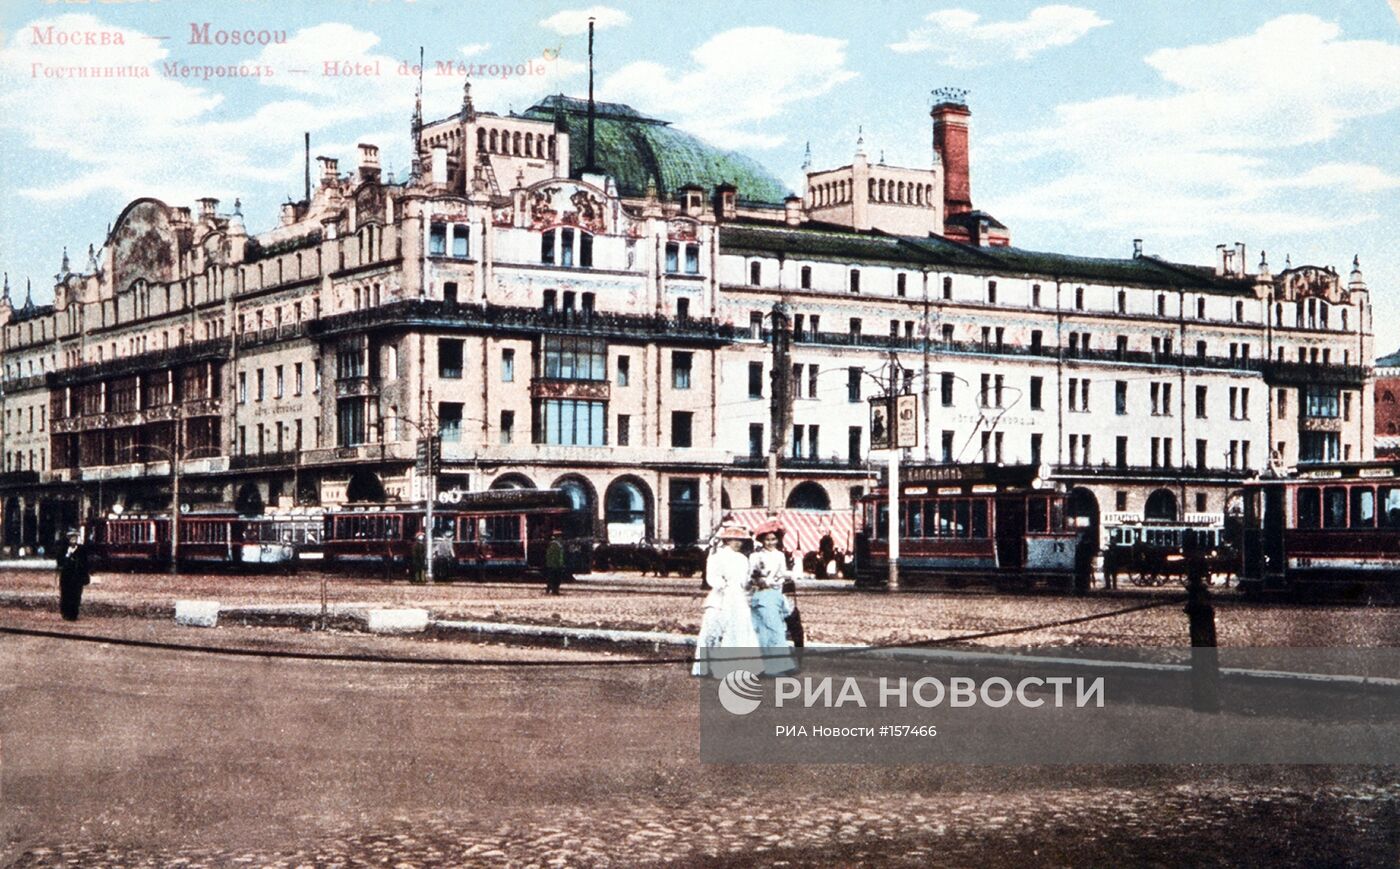 Гостиница "Метрополь" в Москве